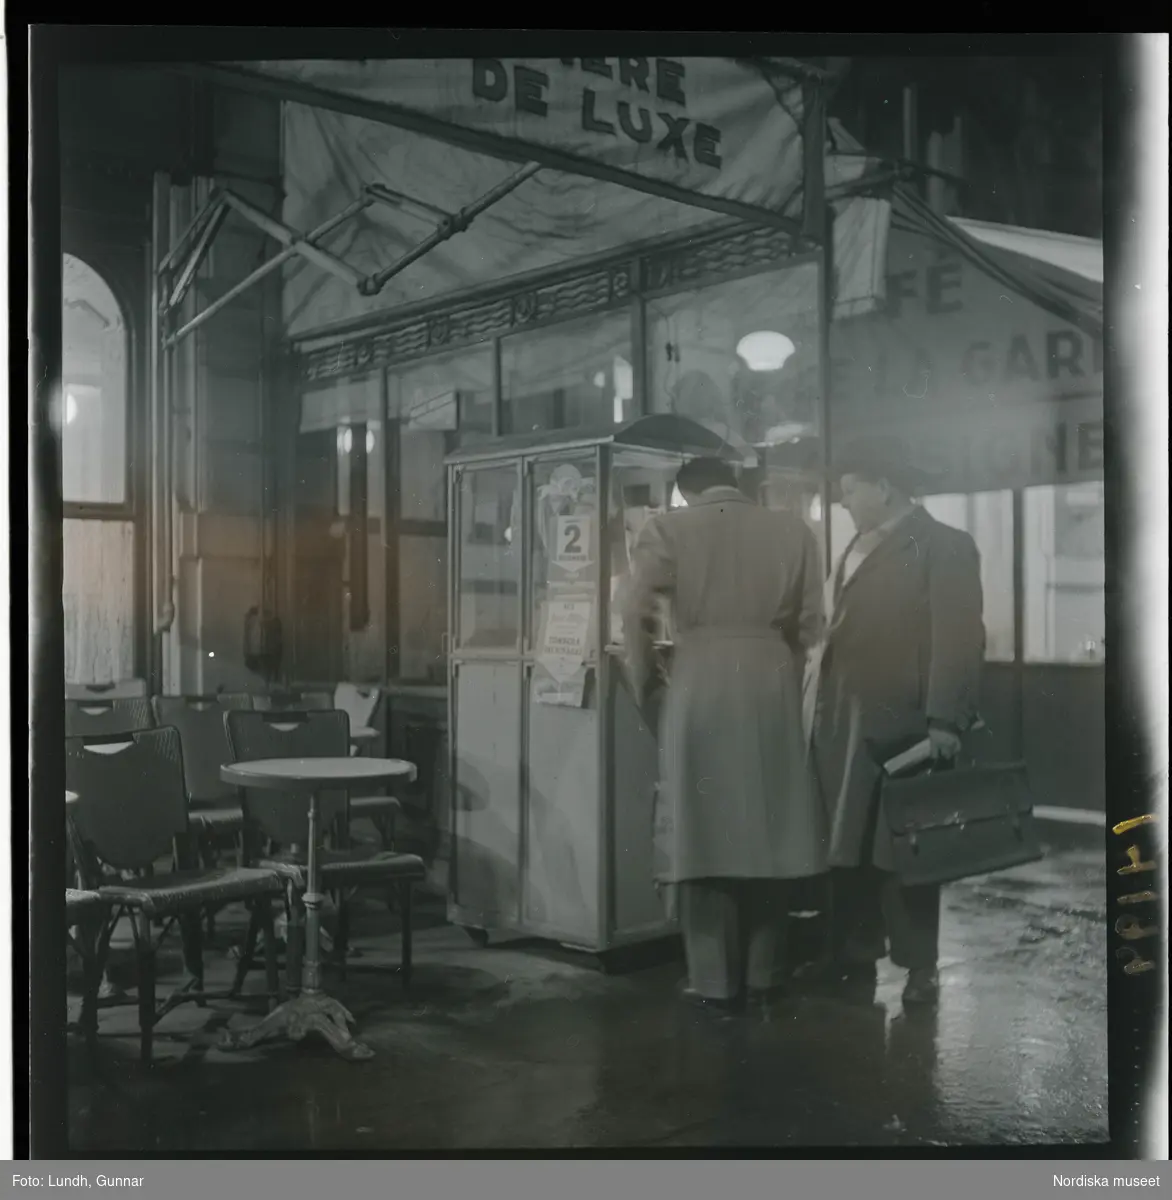 1950. Paris. Två män utanför ett café, kväll